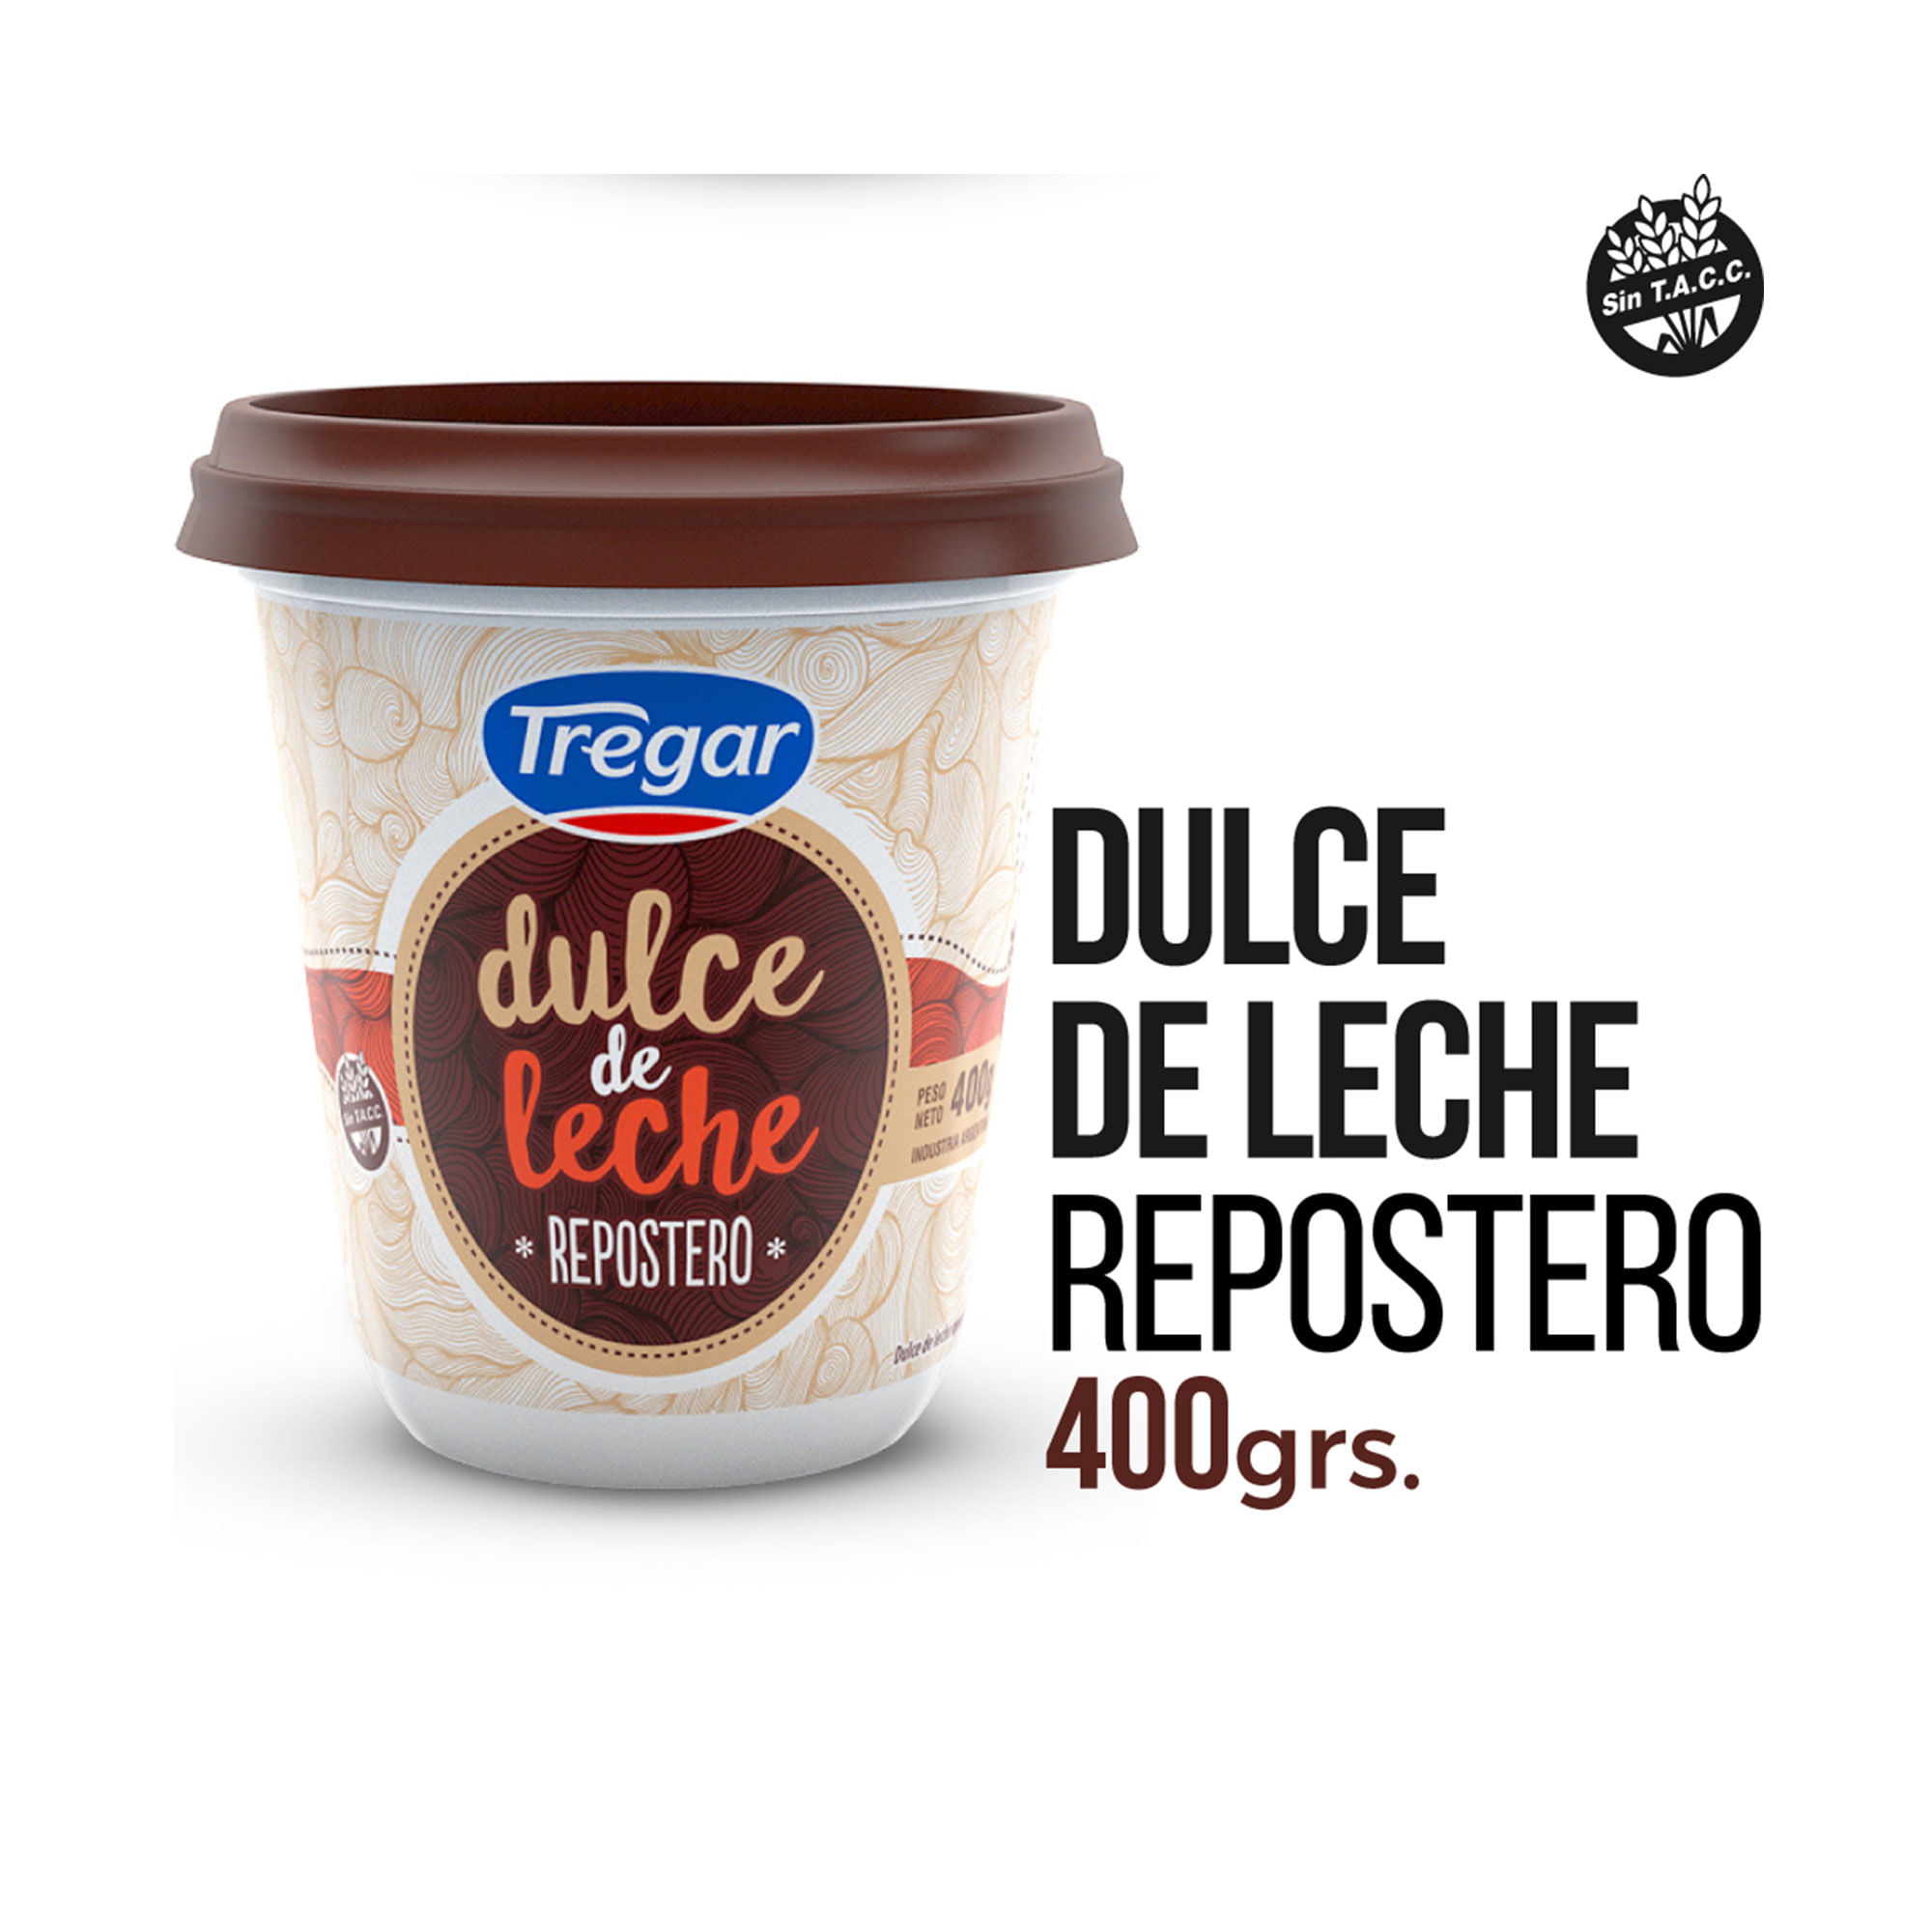 Dulce de leche repostero - Carrefour - 400 g